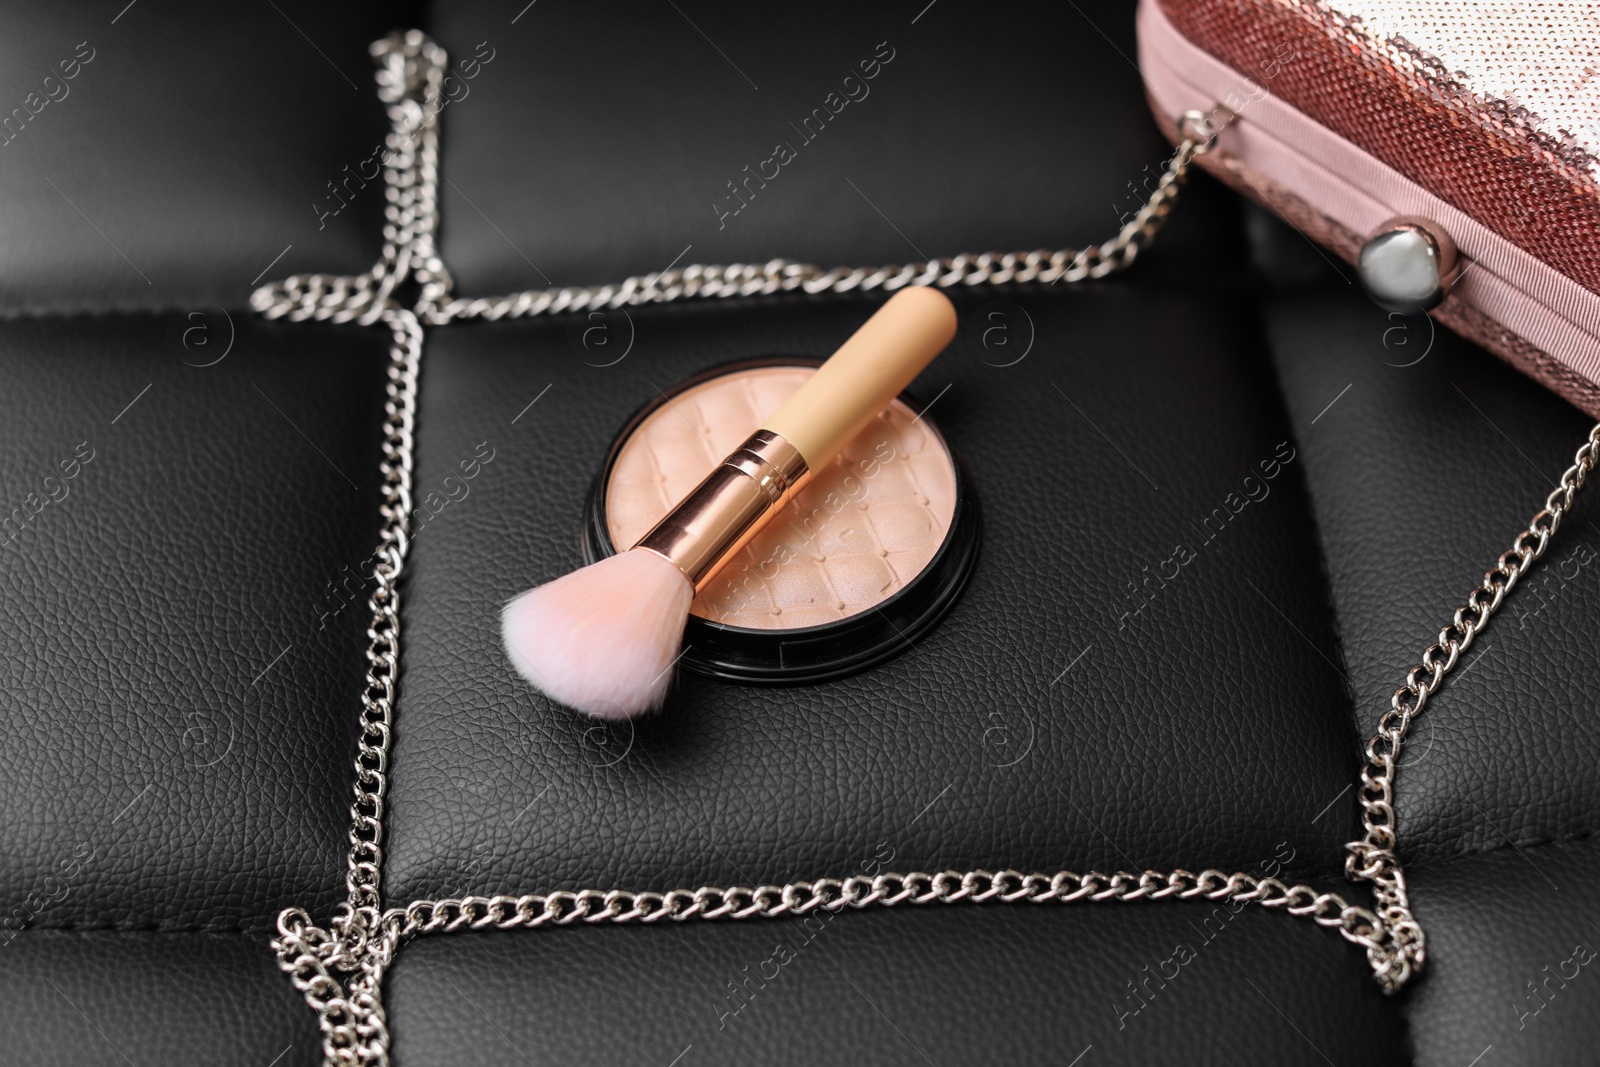 Photo of Powder, brush and handbag on black leather background